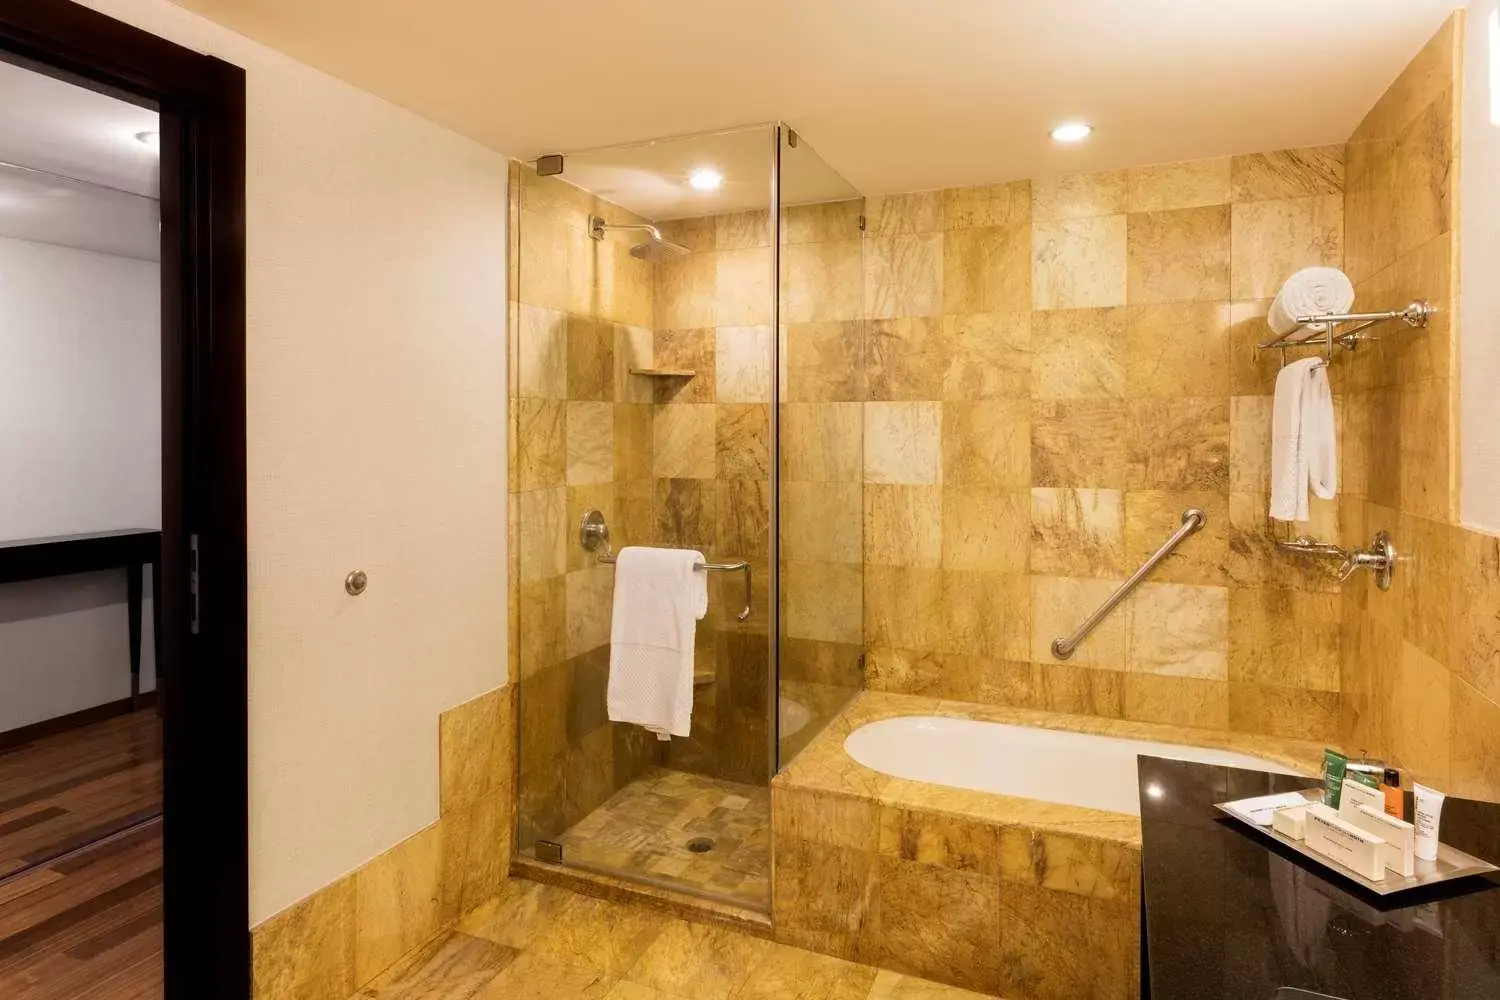 Bathroom in Hilton Mexico City Reforma